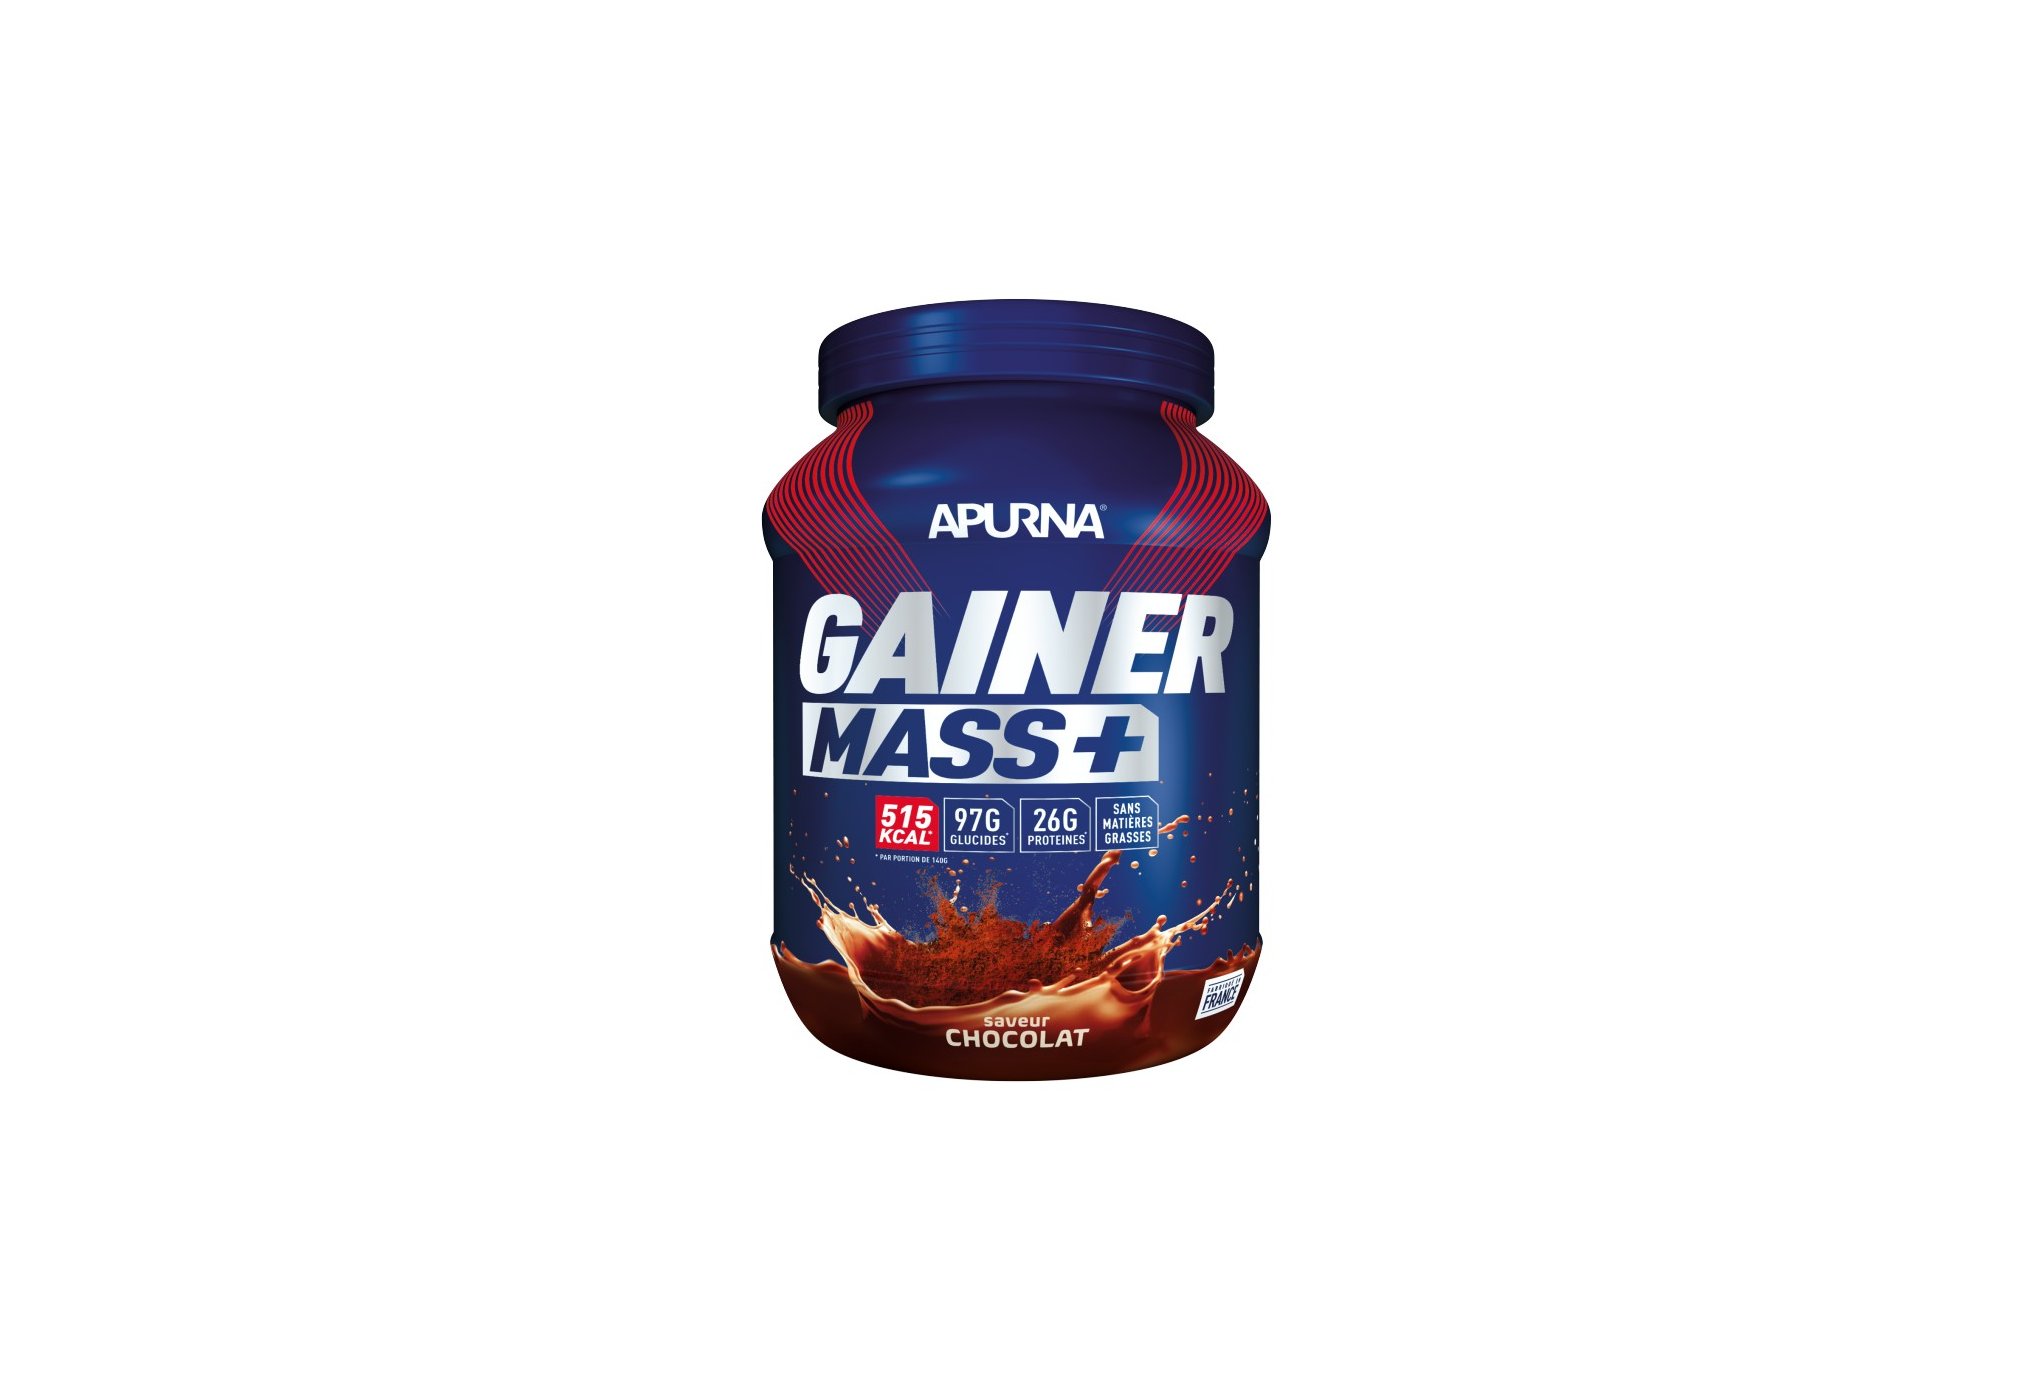 Apurna Gainer Mass+ - Chocolat 1.1 Kg Diététique Protéines / récupération